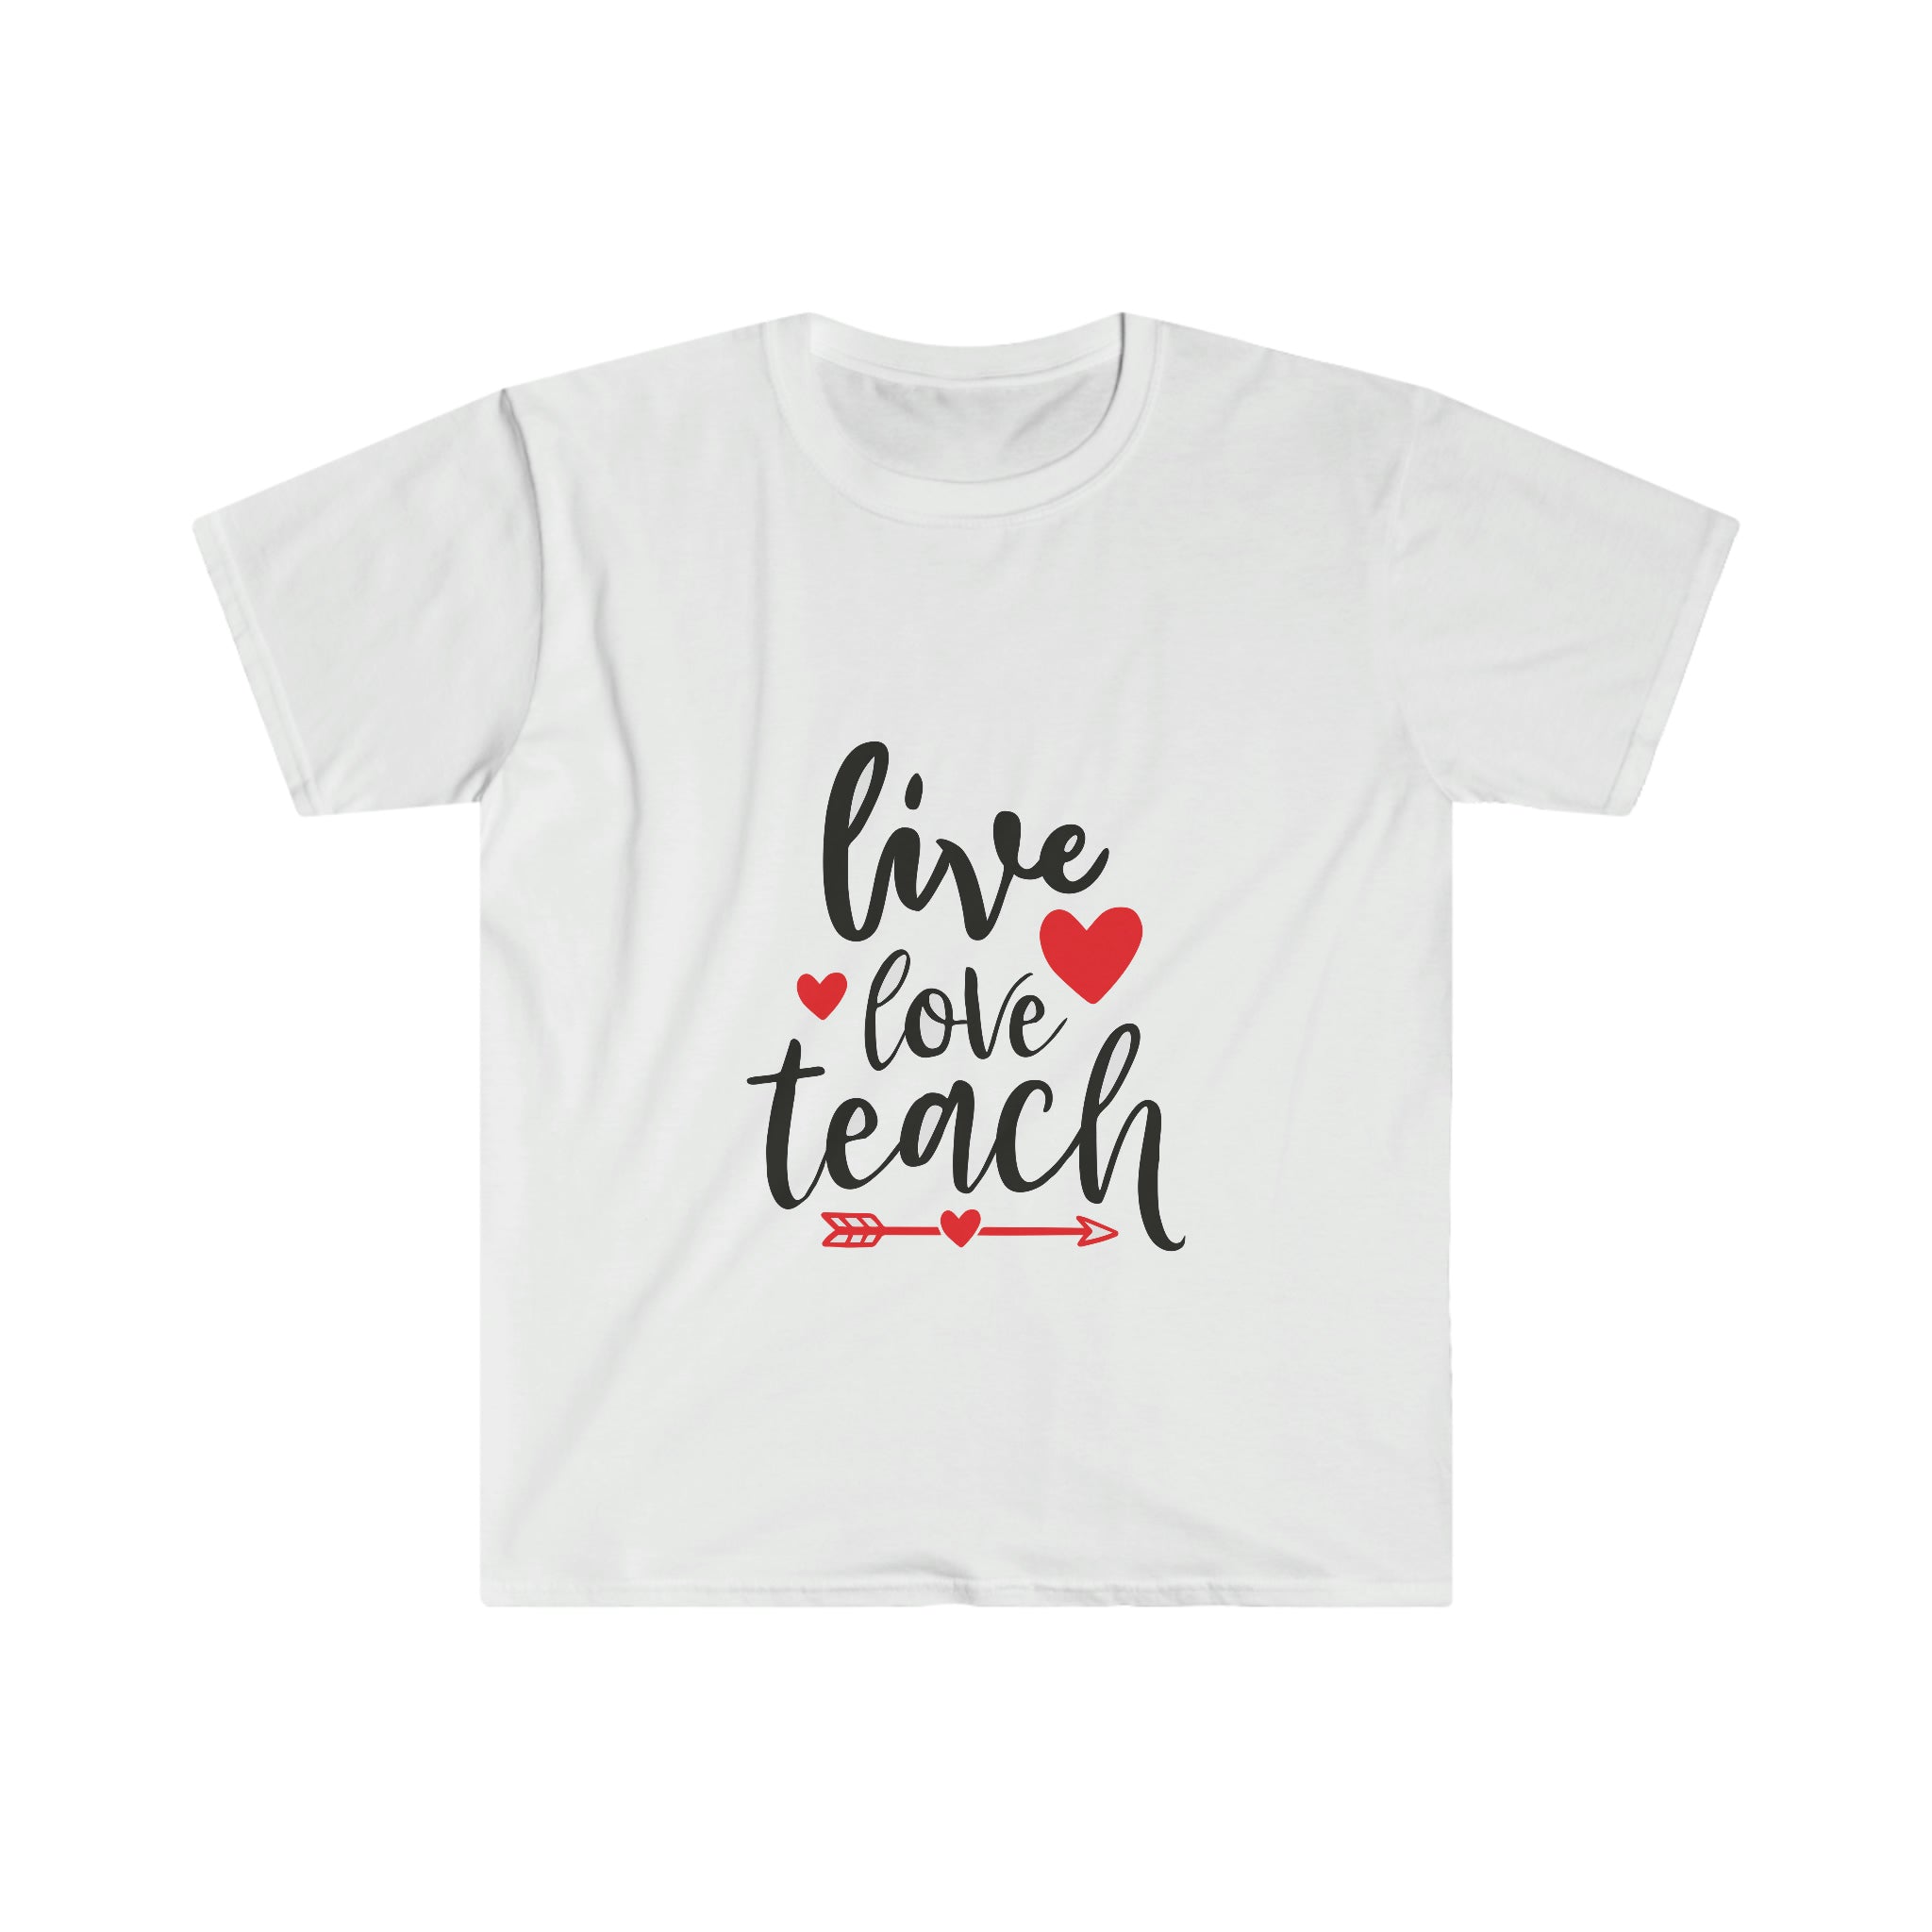 Live, Love, Teach T-Shirt